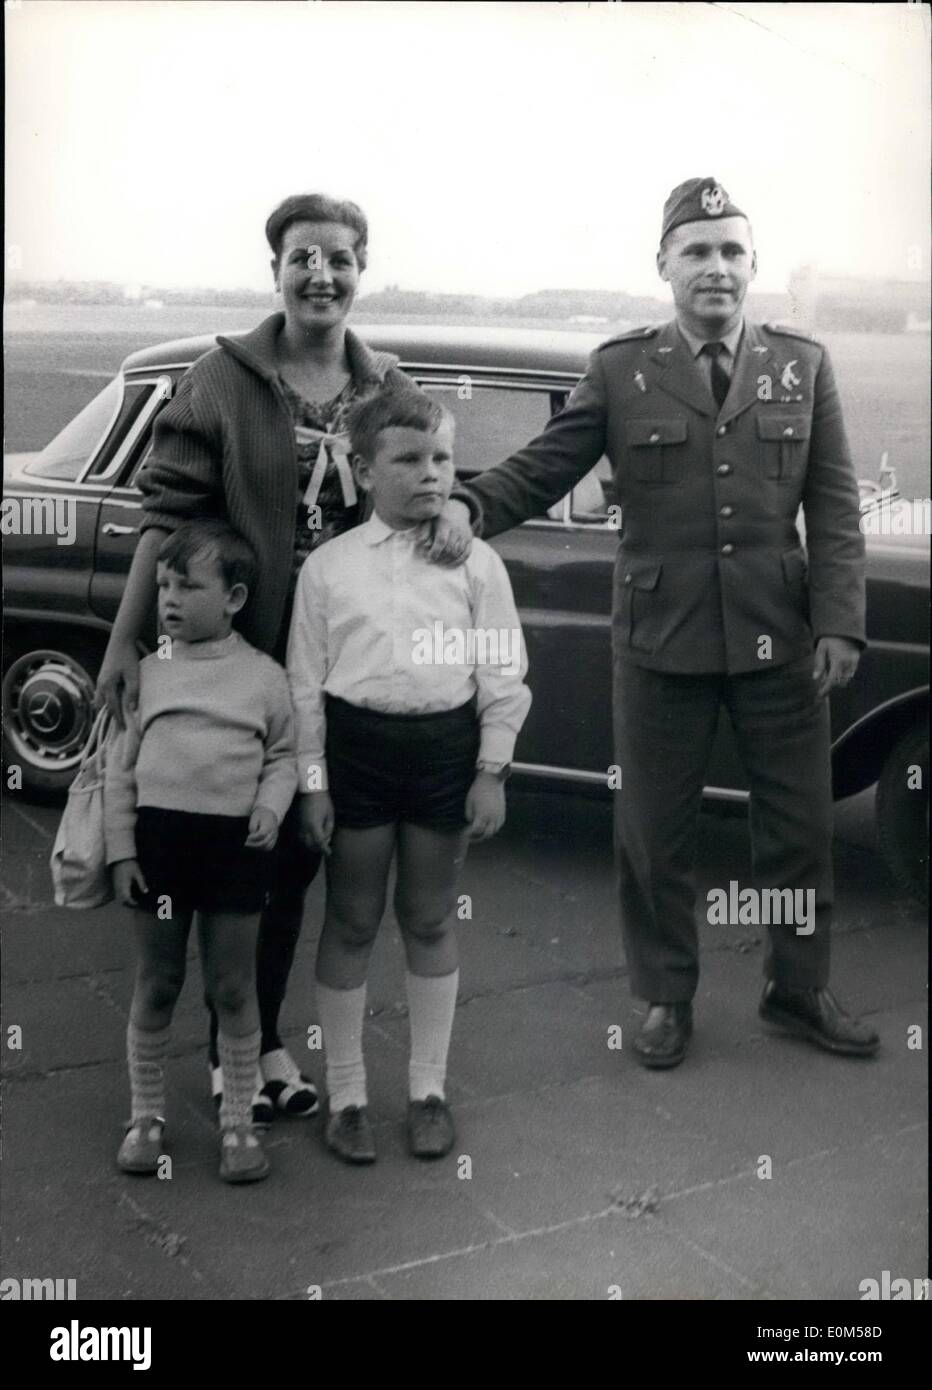 Juillet 07, 1953 - major de l'armée polonaise s'est échappé à Berlin Ouest. Dans un plan de test TS-8 un major de l'Air polonaise-force s'échappa à Berlin. Il s'est enfui avec sa femme et ses deux enfants. OPS : Majpr Obcaz (34), son épouse, Mary (27) et ses deux enfants Lestow (9) et Kristofer (5), sur l'aéroport de Tempelhof Berlin Ouest. Banque D'Images